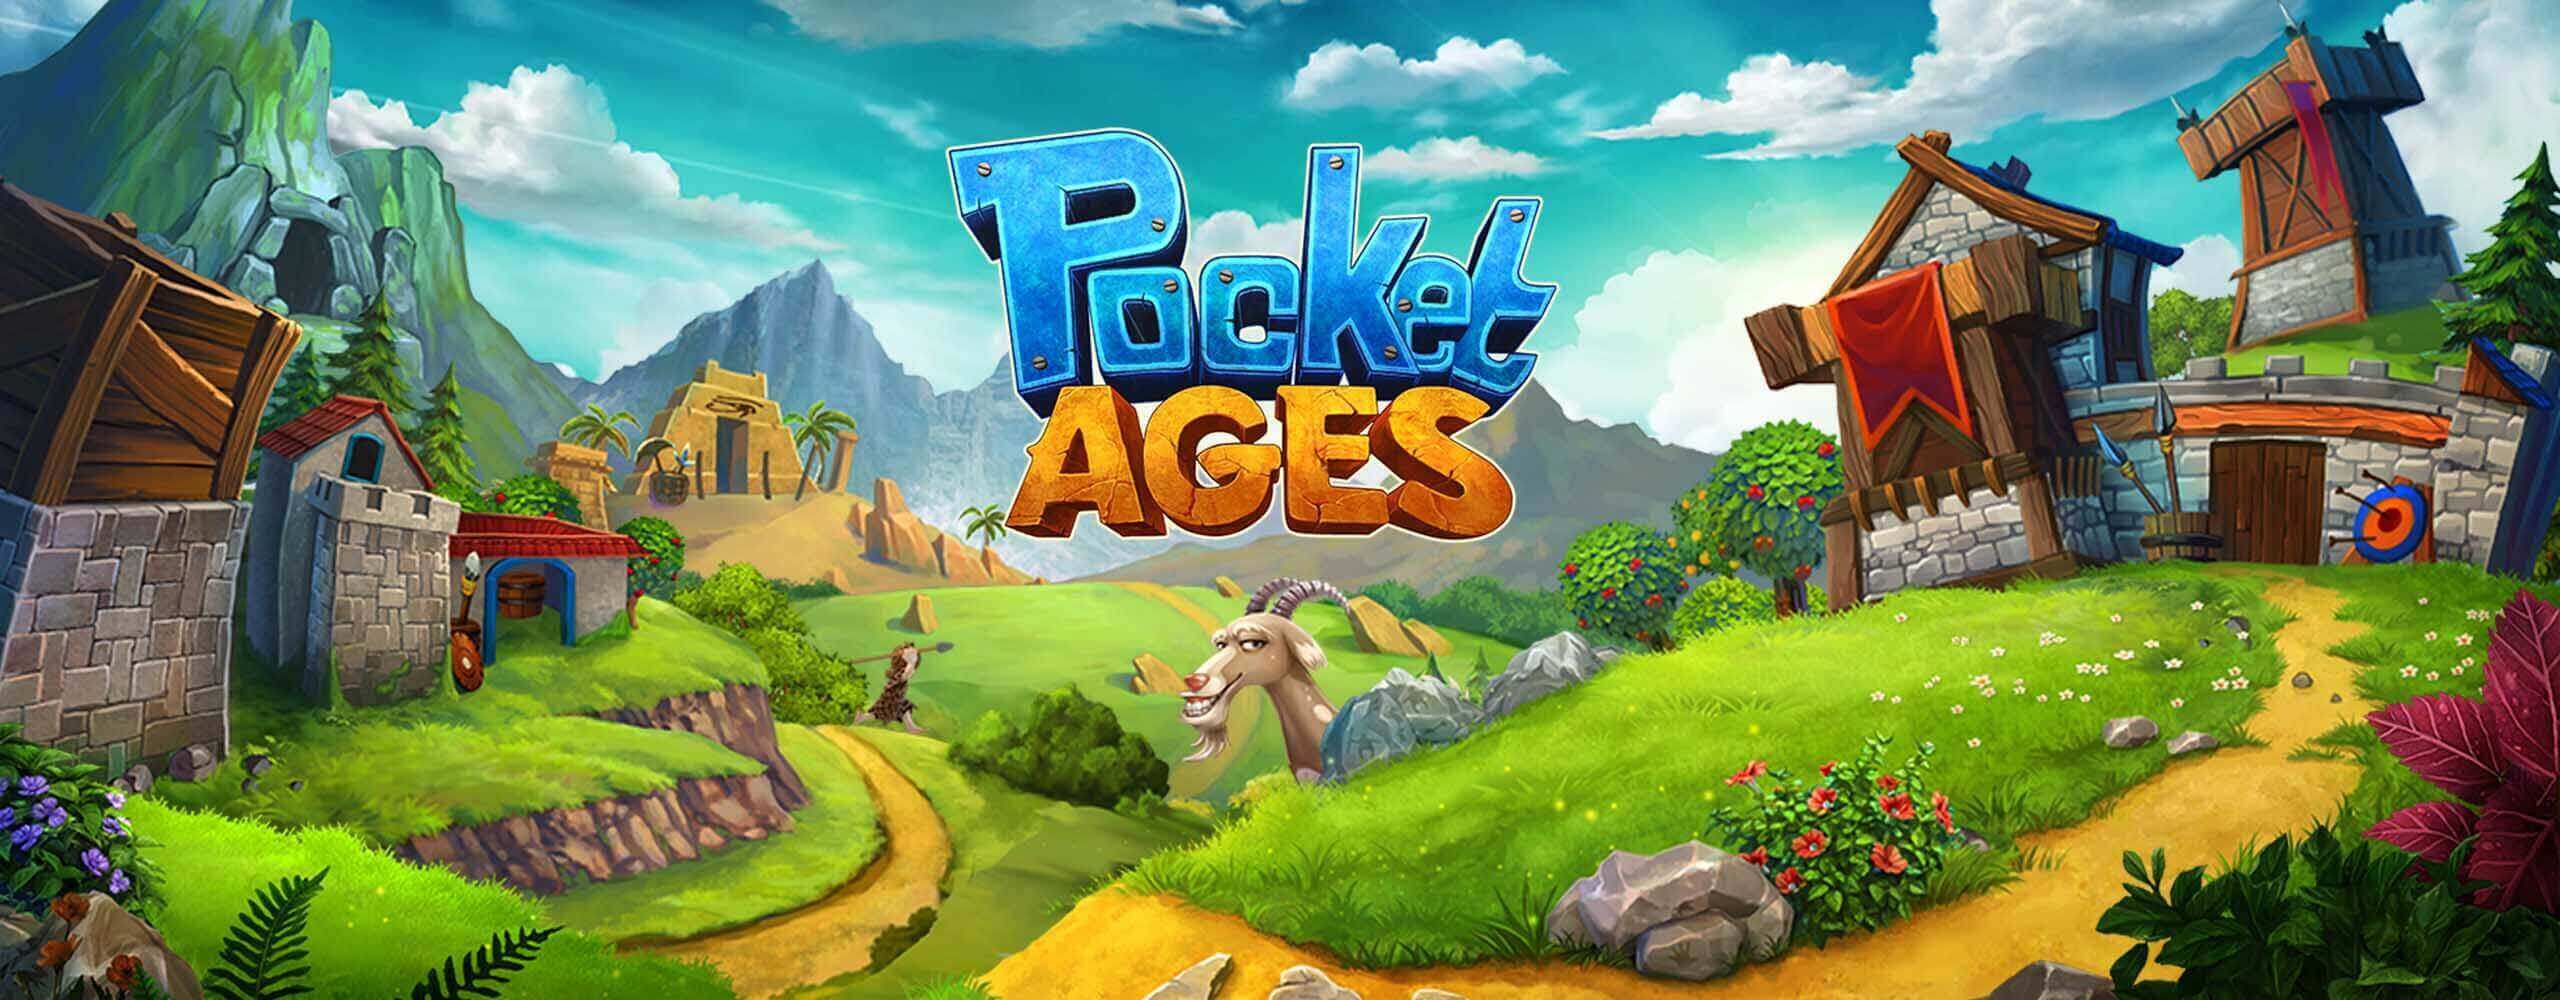 Pocket Ages